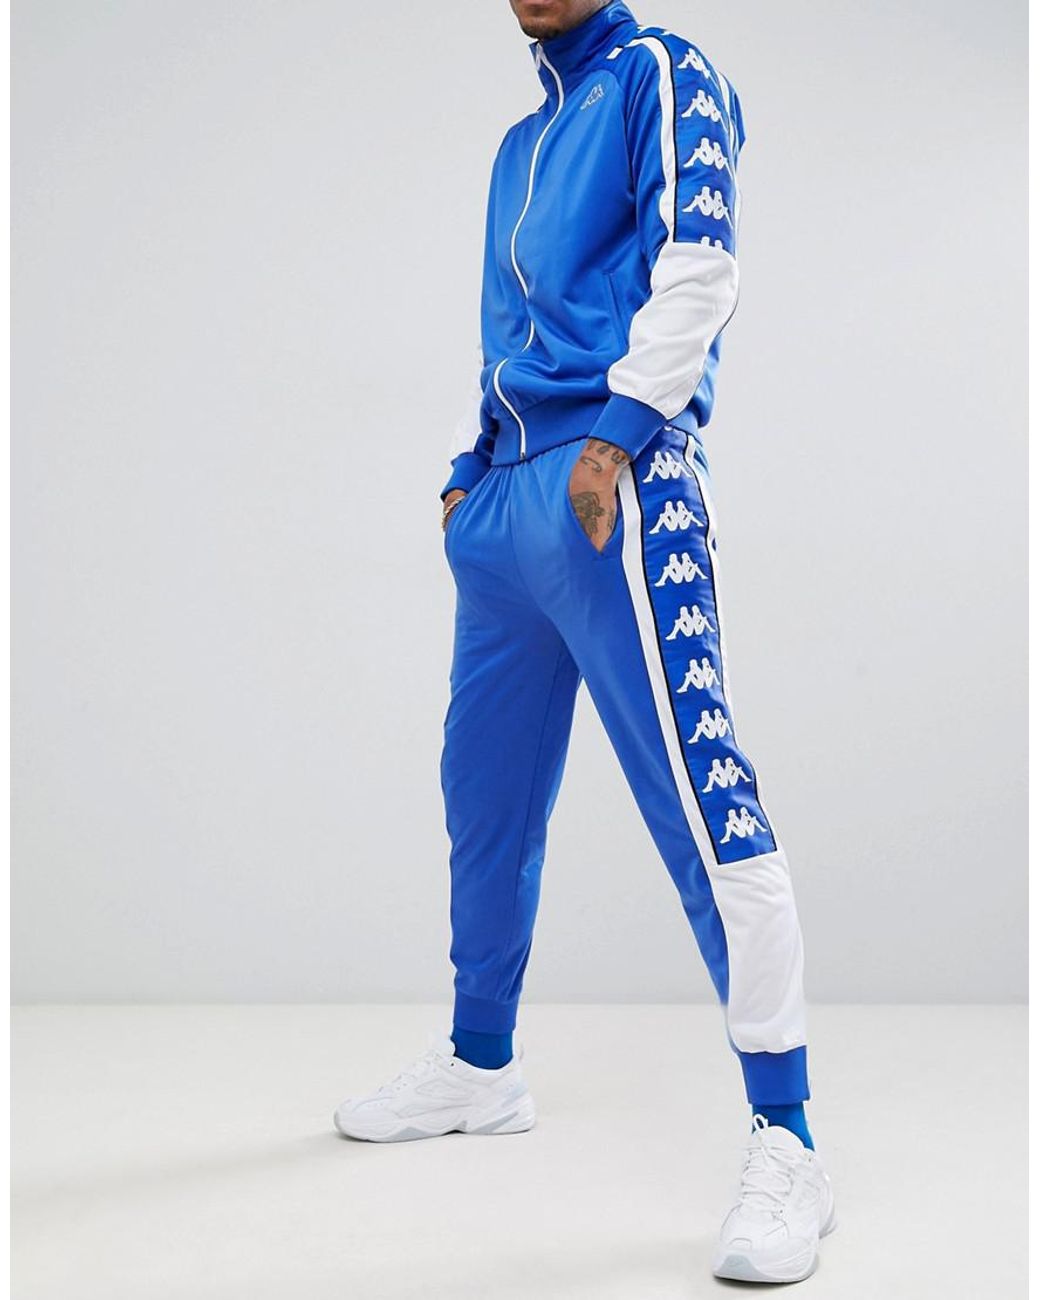 Костюм карра. Спортивный костюм Kappa 2022. Kappa Tracksuit синий костюм. Голубой костюм Kappa мужской.